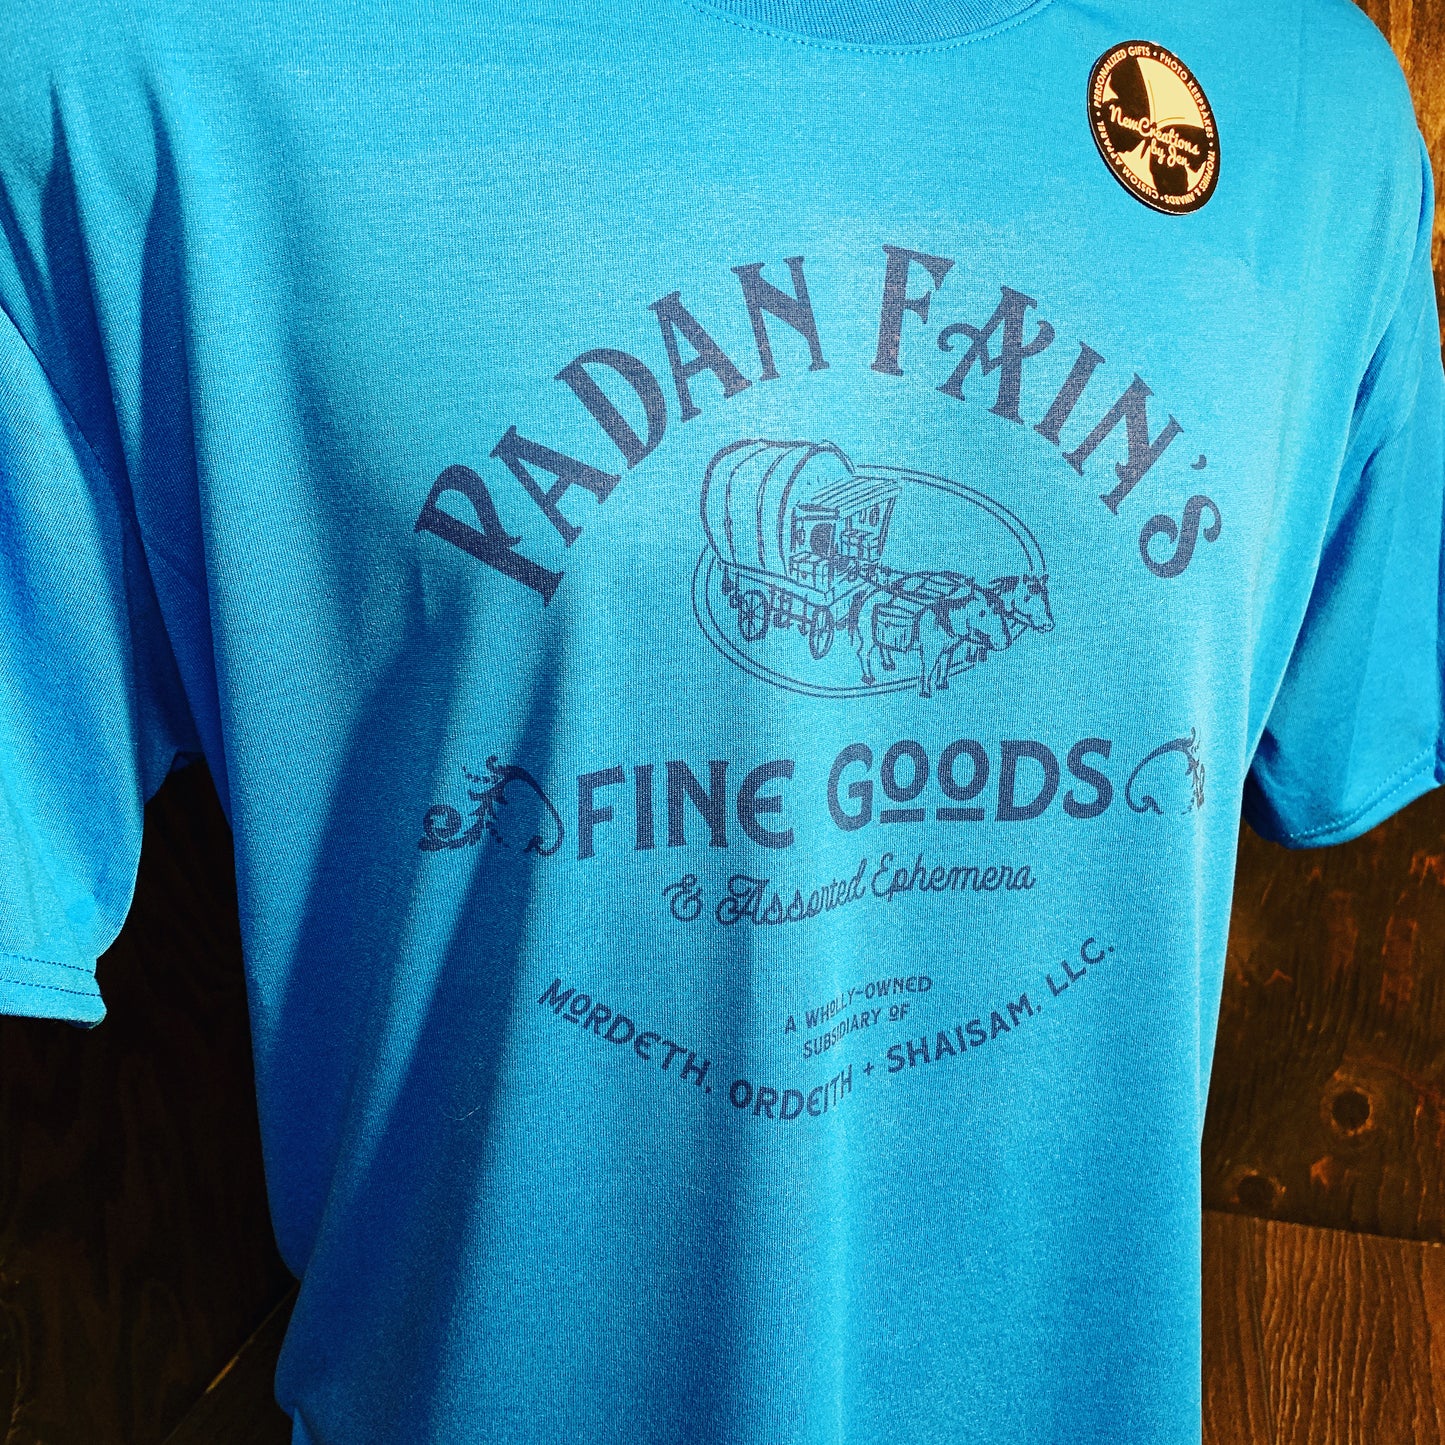 Padan Fain's Fine Goods - Wheel of Time Inspired  Souvenir Lightweight  Tees